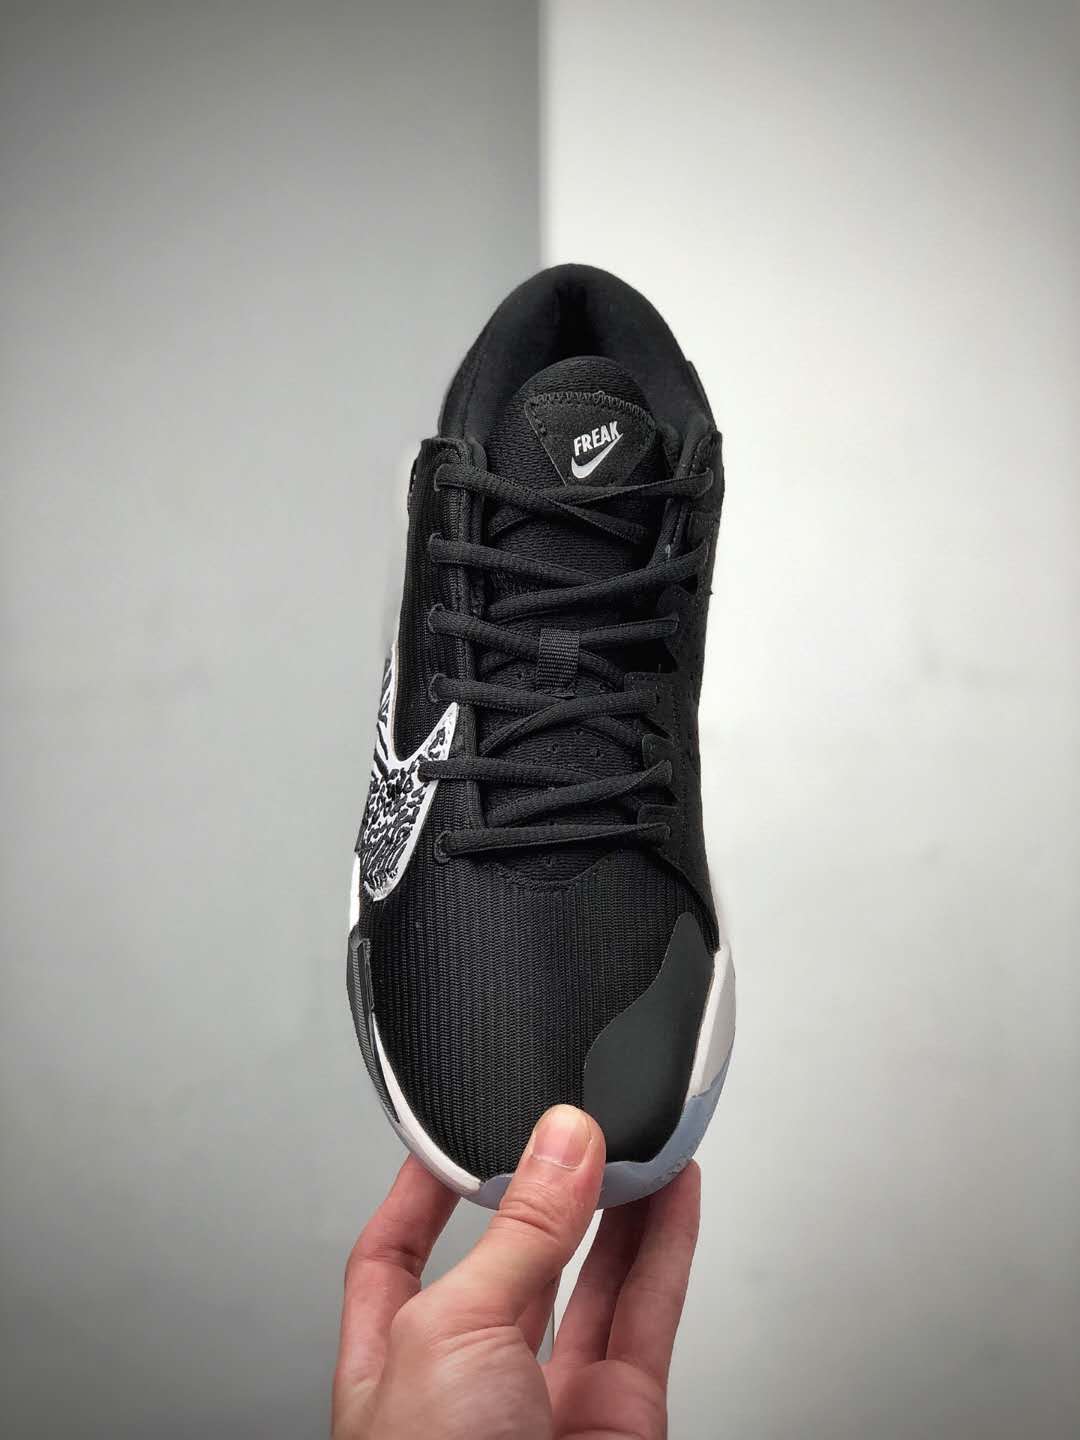 Nike Zoom Freak 2 'Black' CK5424-001 | Elite Performance Basketball Sneakers